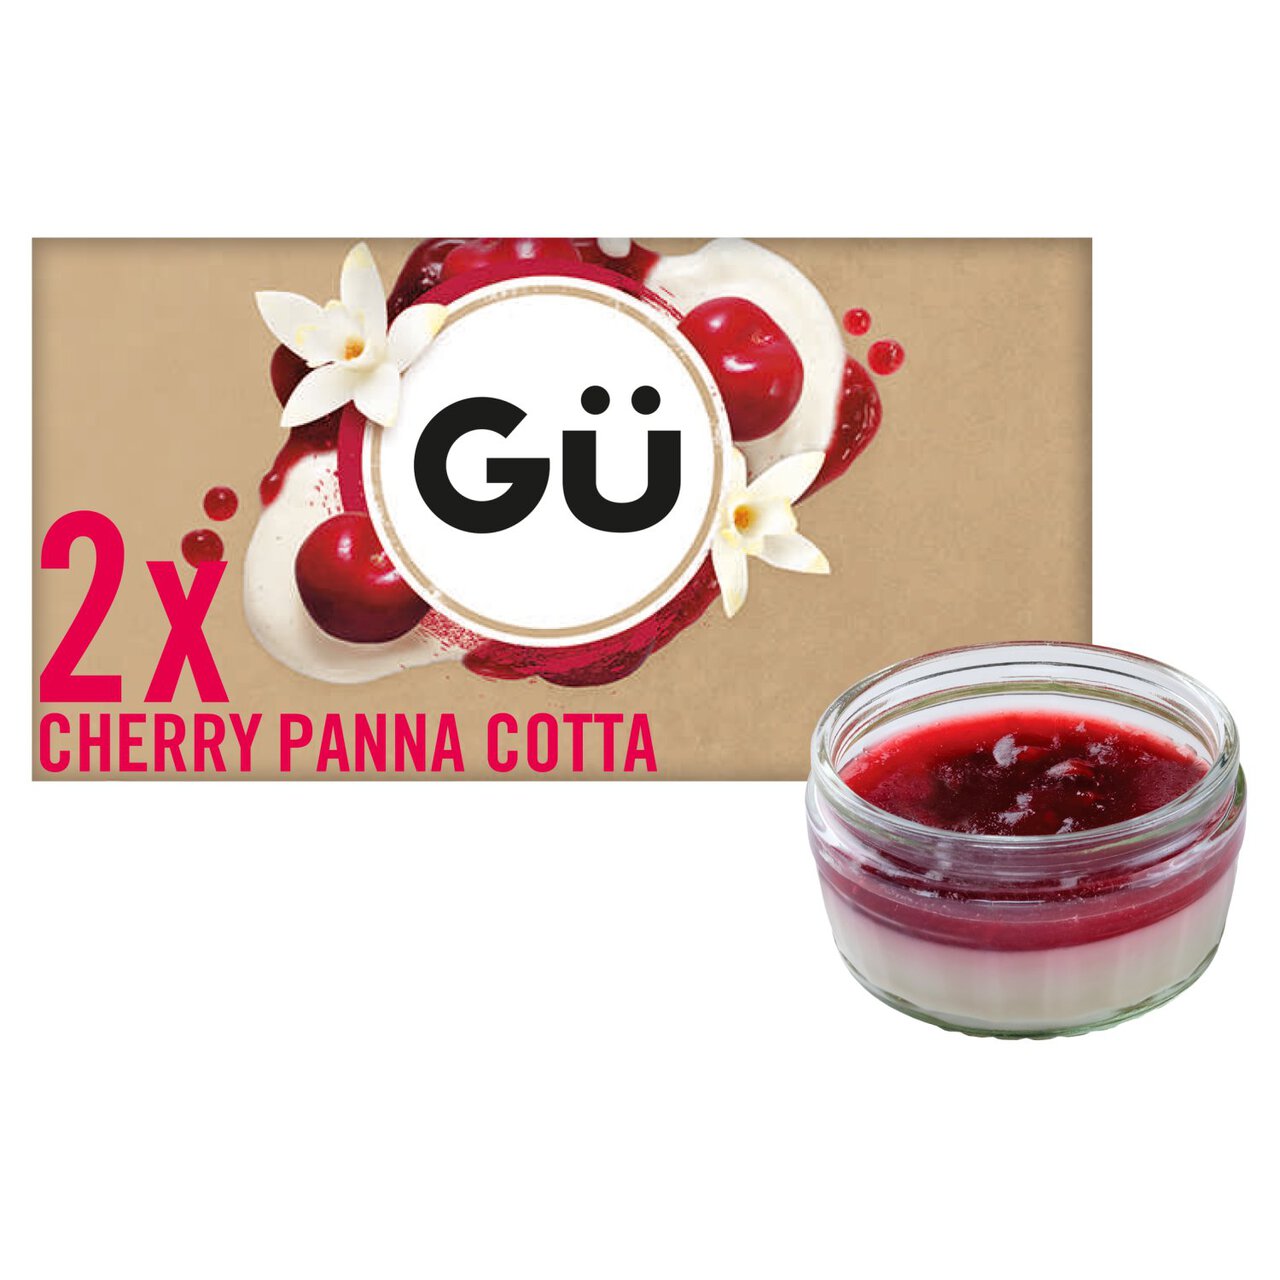 Gu Cherry Panna Cotta Dessert 2 x 90g